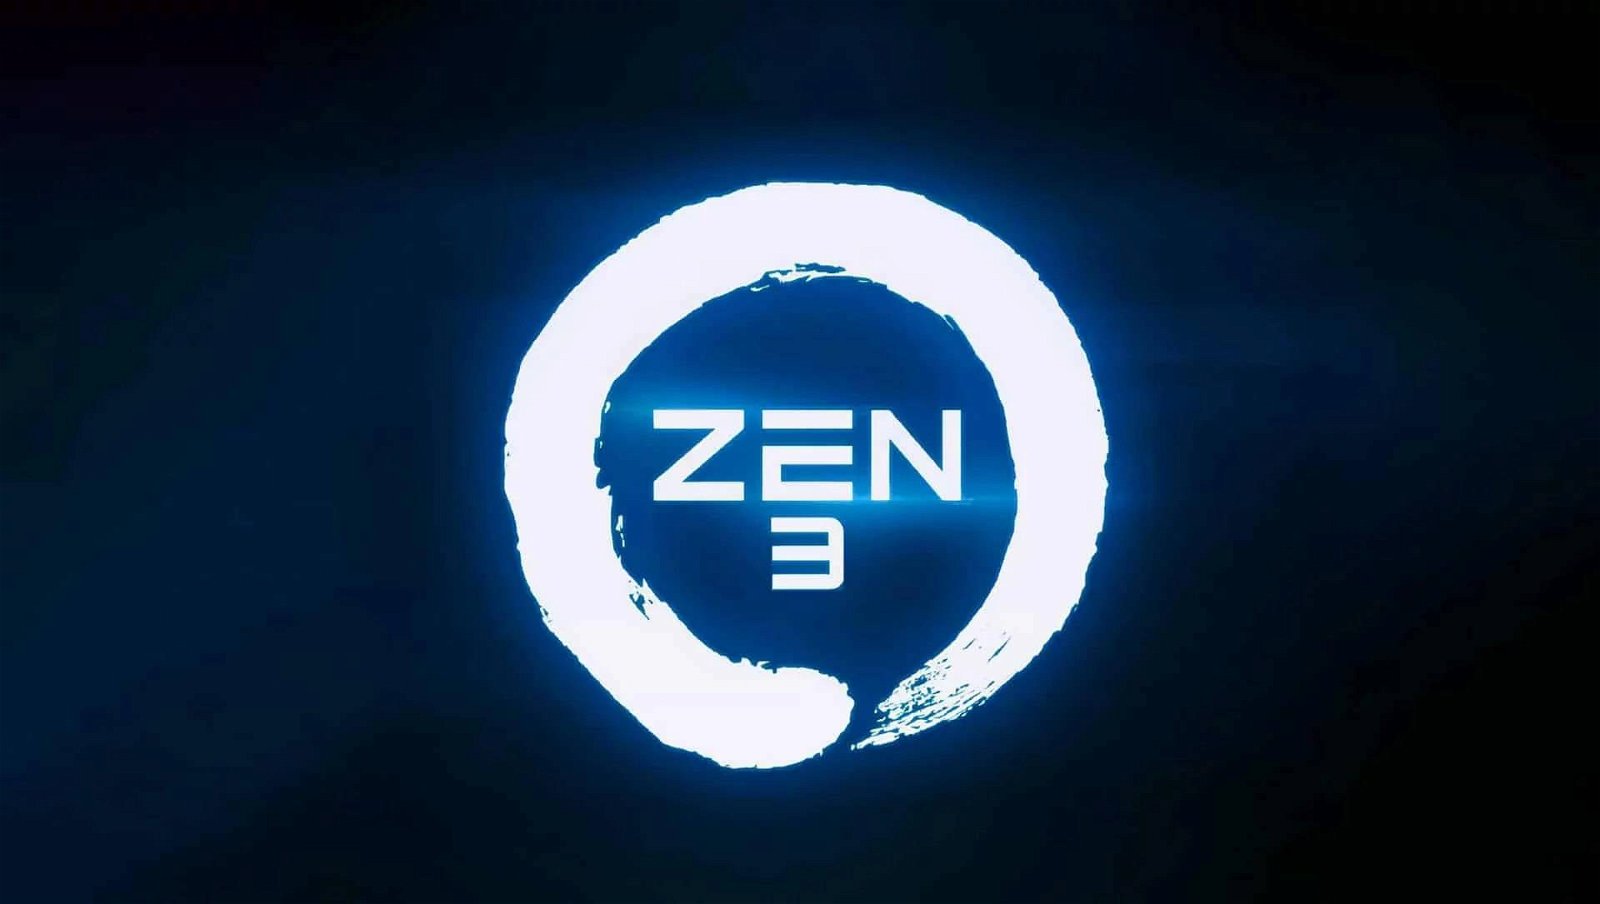 Immagine di AMD pensa di rimandare Zen 3 al 2021? [Aggiornata]